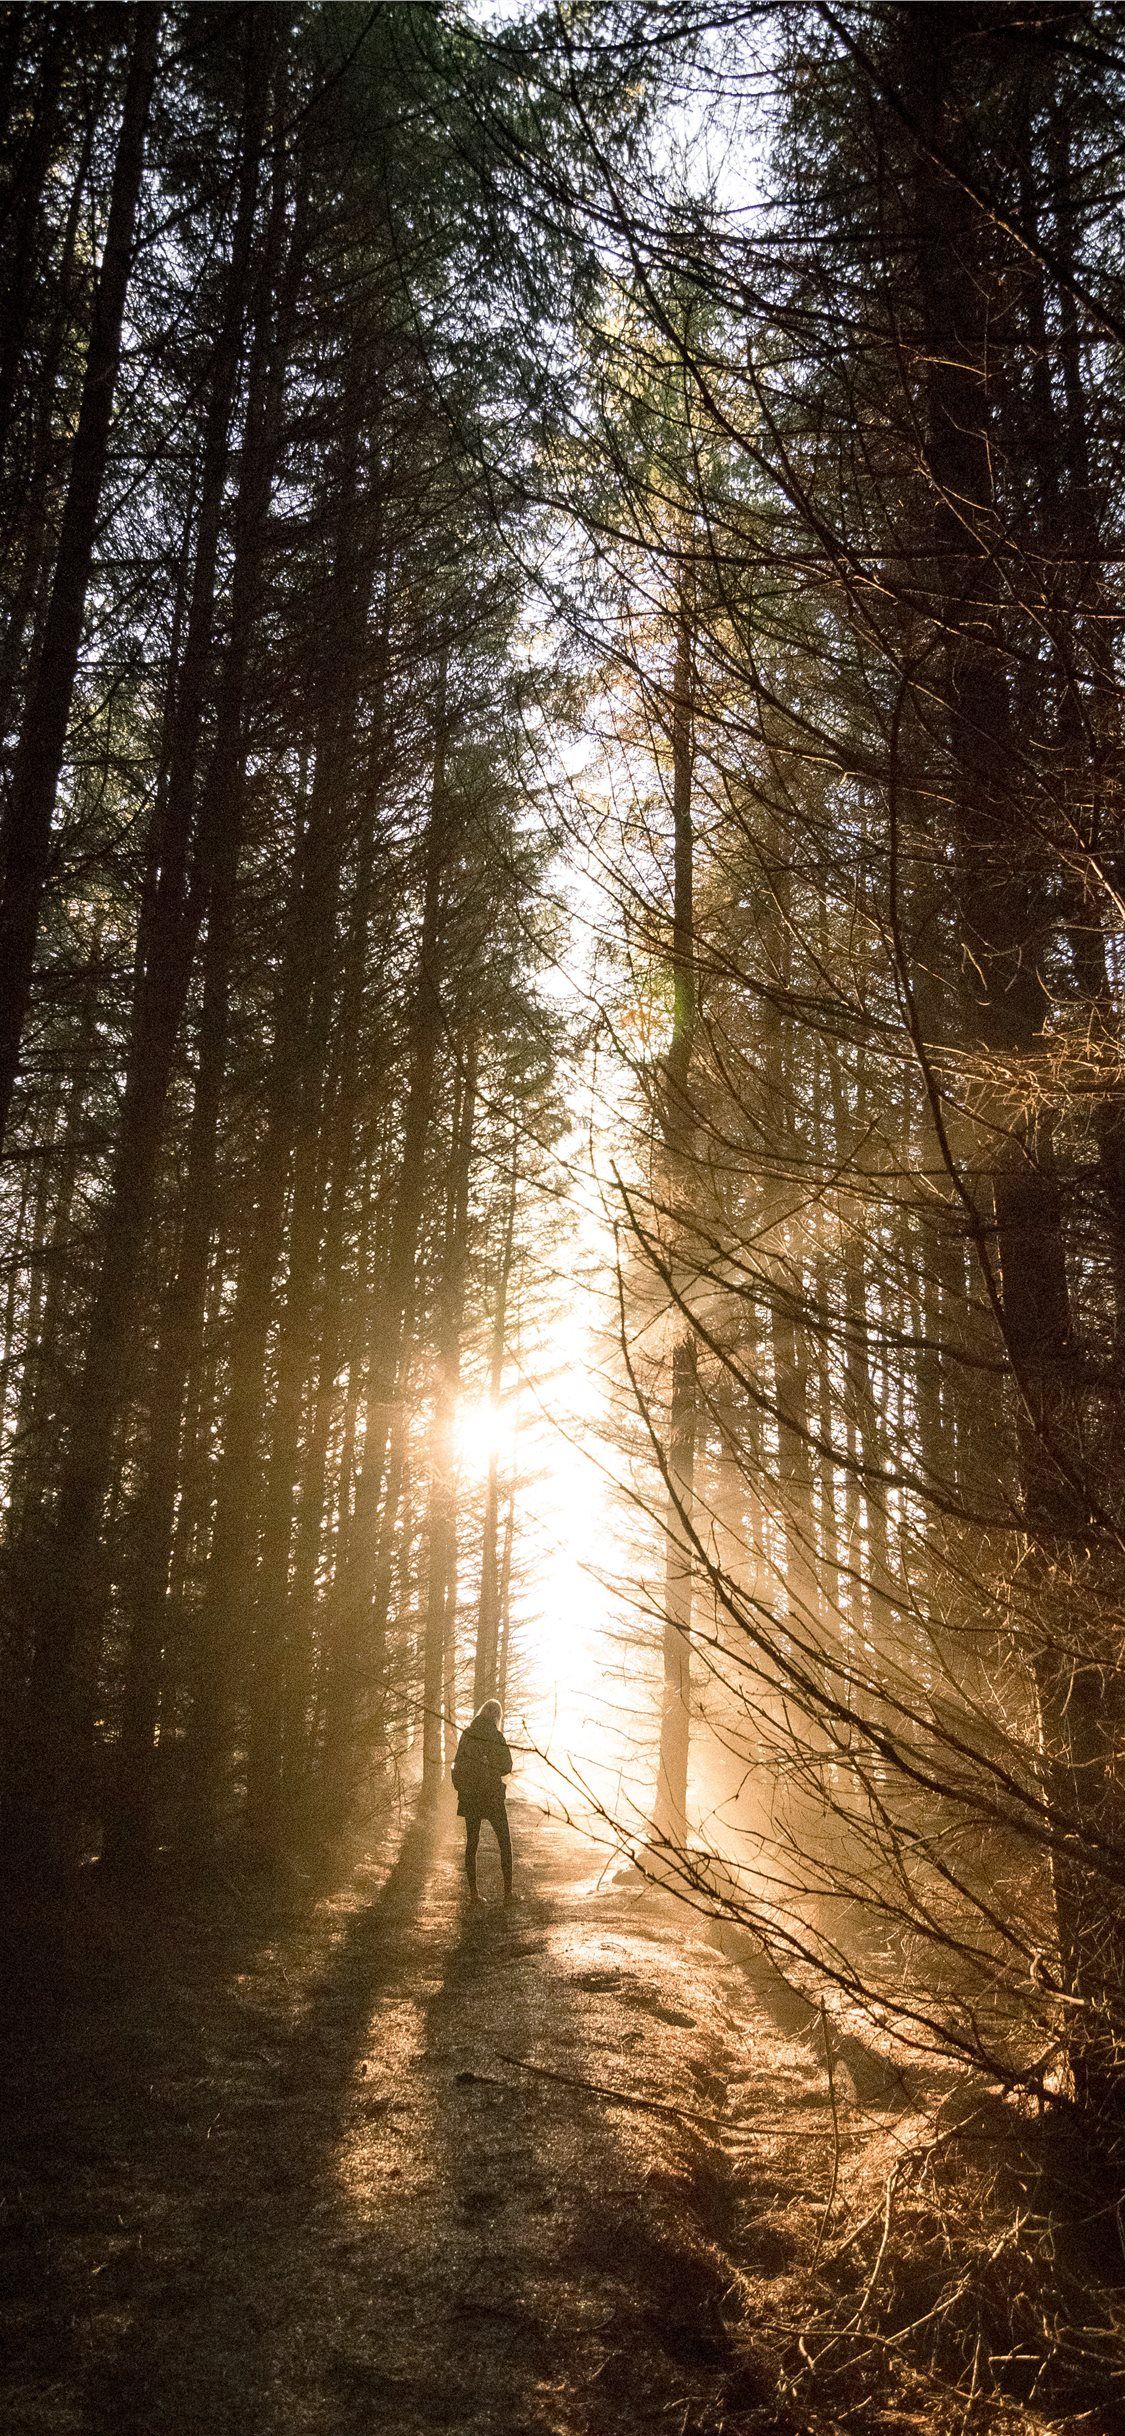 Increíble puesta de sol a través del bosque iPhone X Wallpapers Descarga gratuita